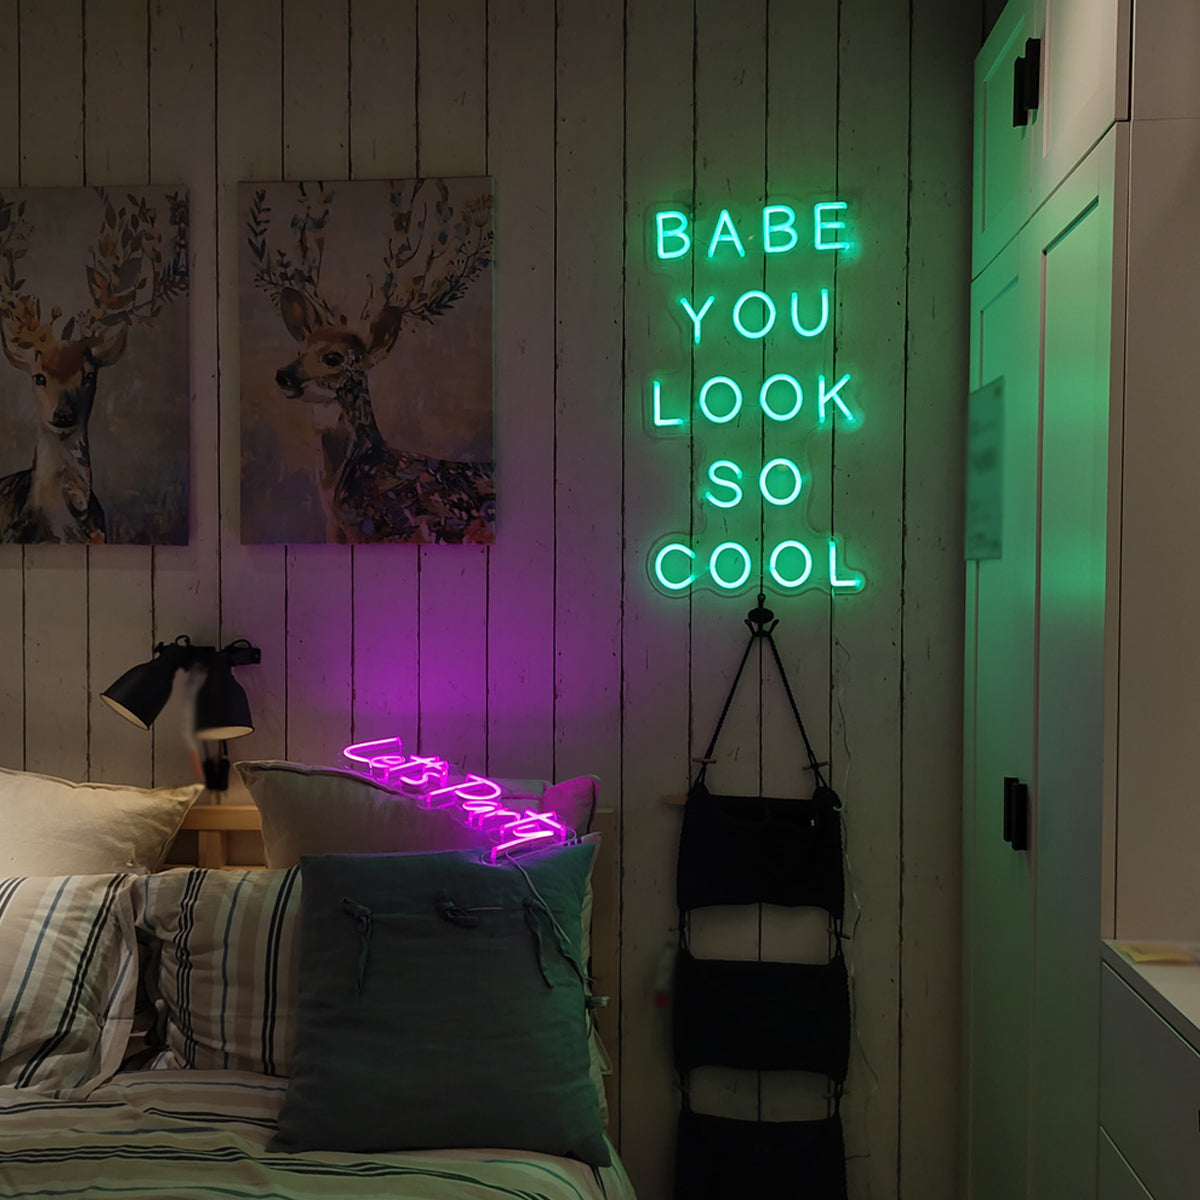 inside a girl room, cyberpunk vibe, neon glowing